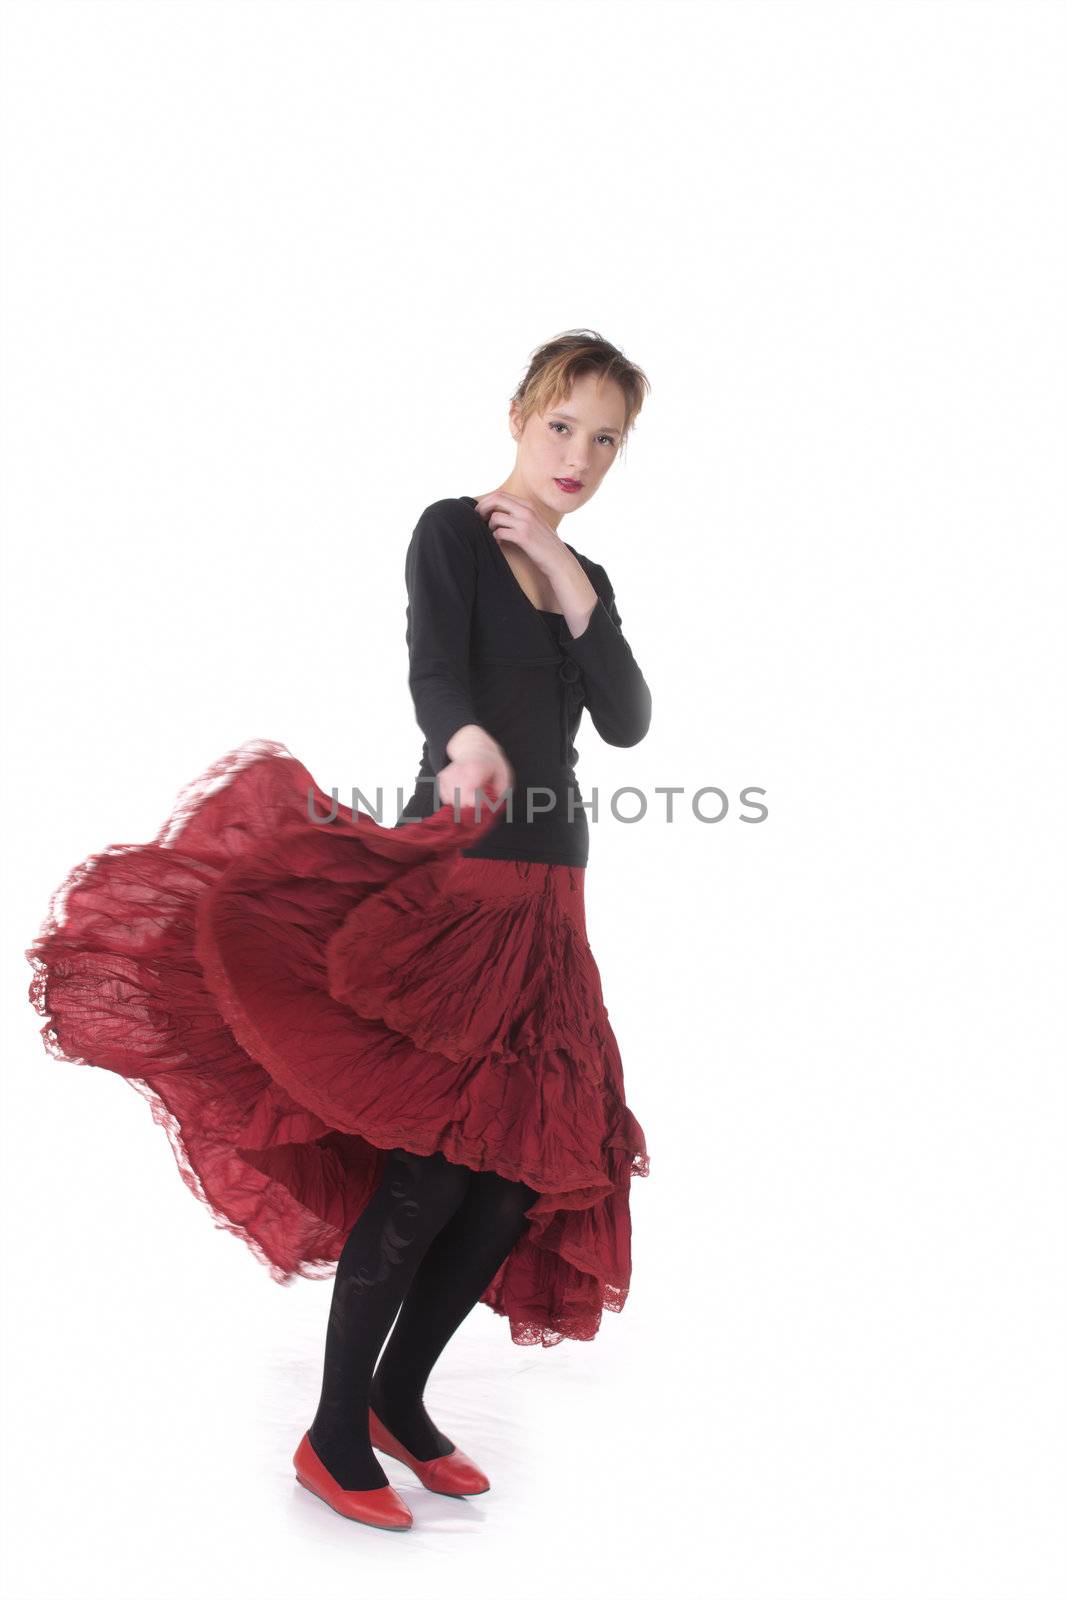 Dansing girl in red and black in studio over white